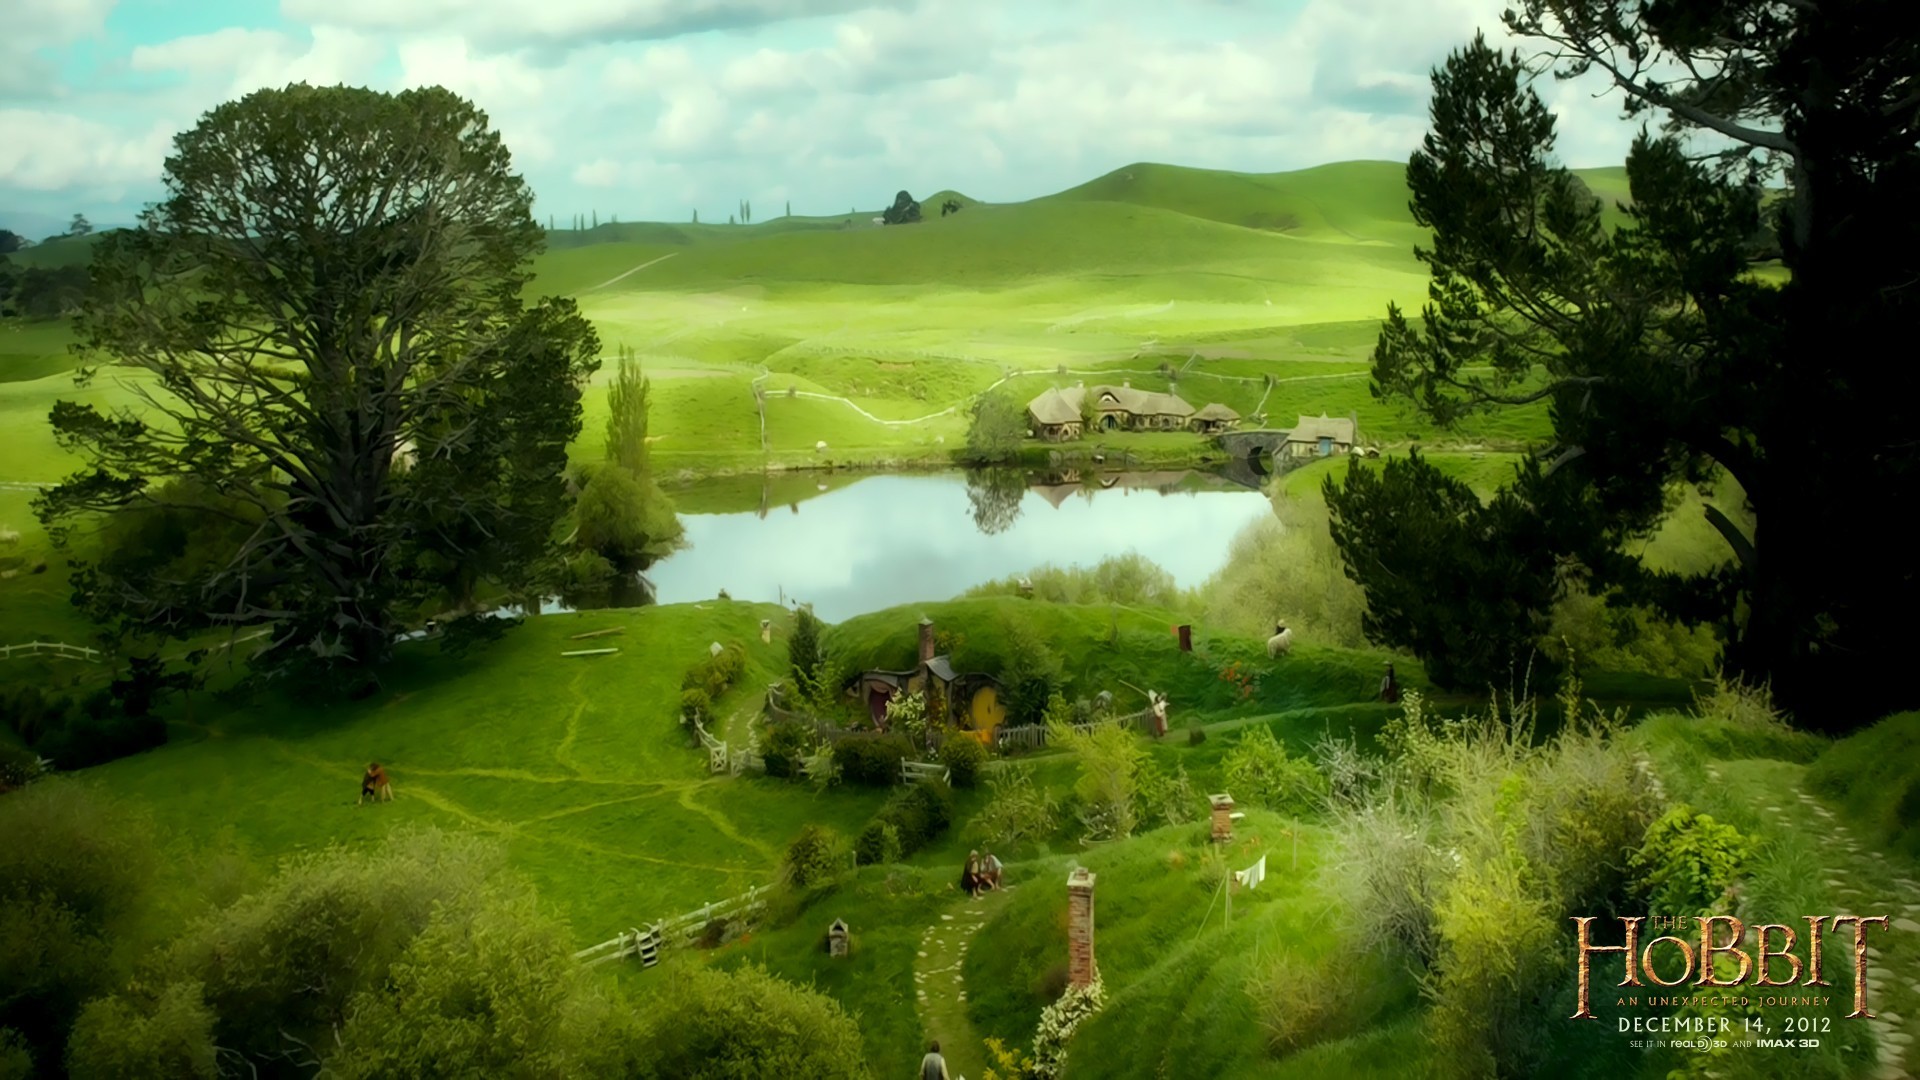 fond d'écran hobbit hd,paysage naturel,la nature,vert,terrain,prairie